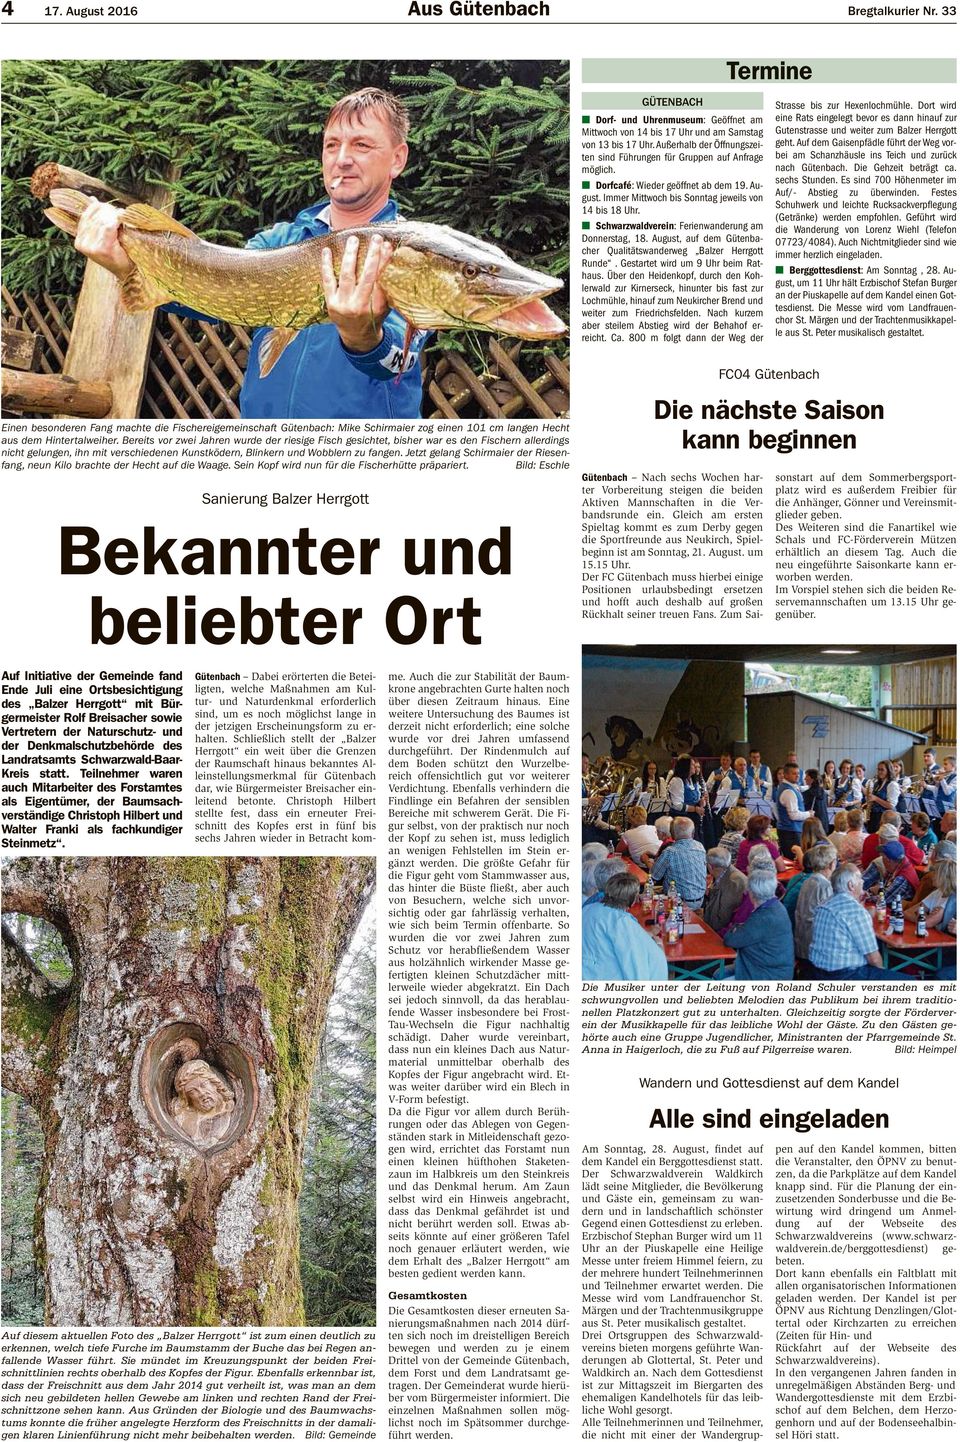 Schwarzwaldverein: Ferienwanderung am Donnerstag, 18. August, auf dem Gütenbacher Qualitätswanderweg Balzer Herrgott Runde. Gestartet wird um 9 Uhr beim Rathaus.